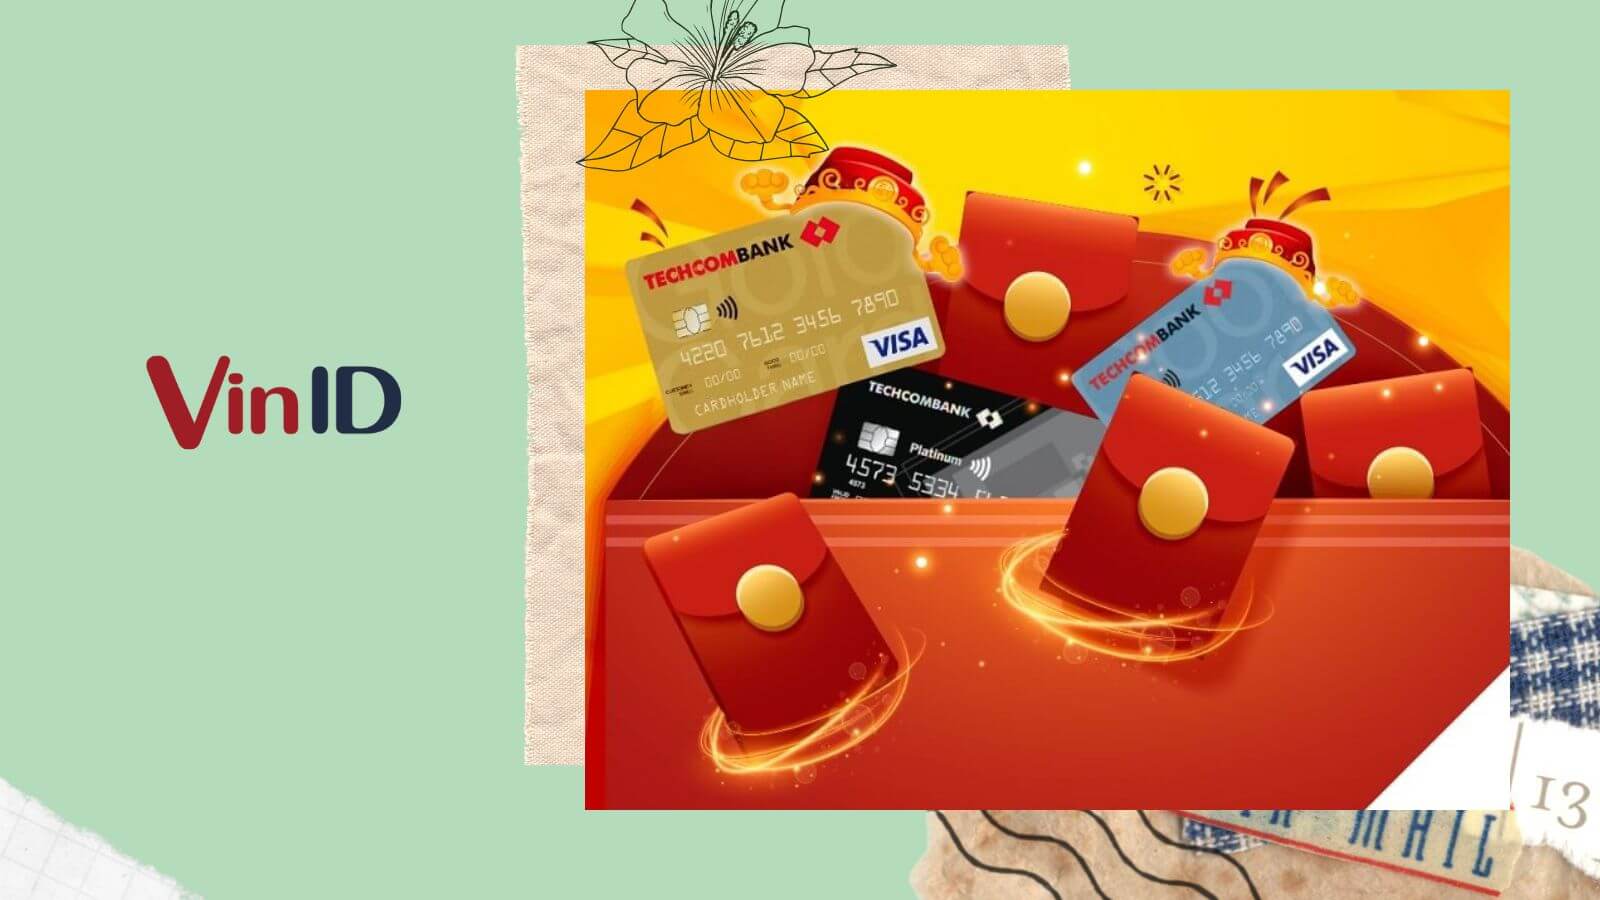 Tìm hiểu về thẻ techcombank visa debit platinum là gì và các ưu đãi hấp dẫn của nó